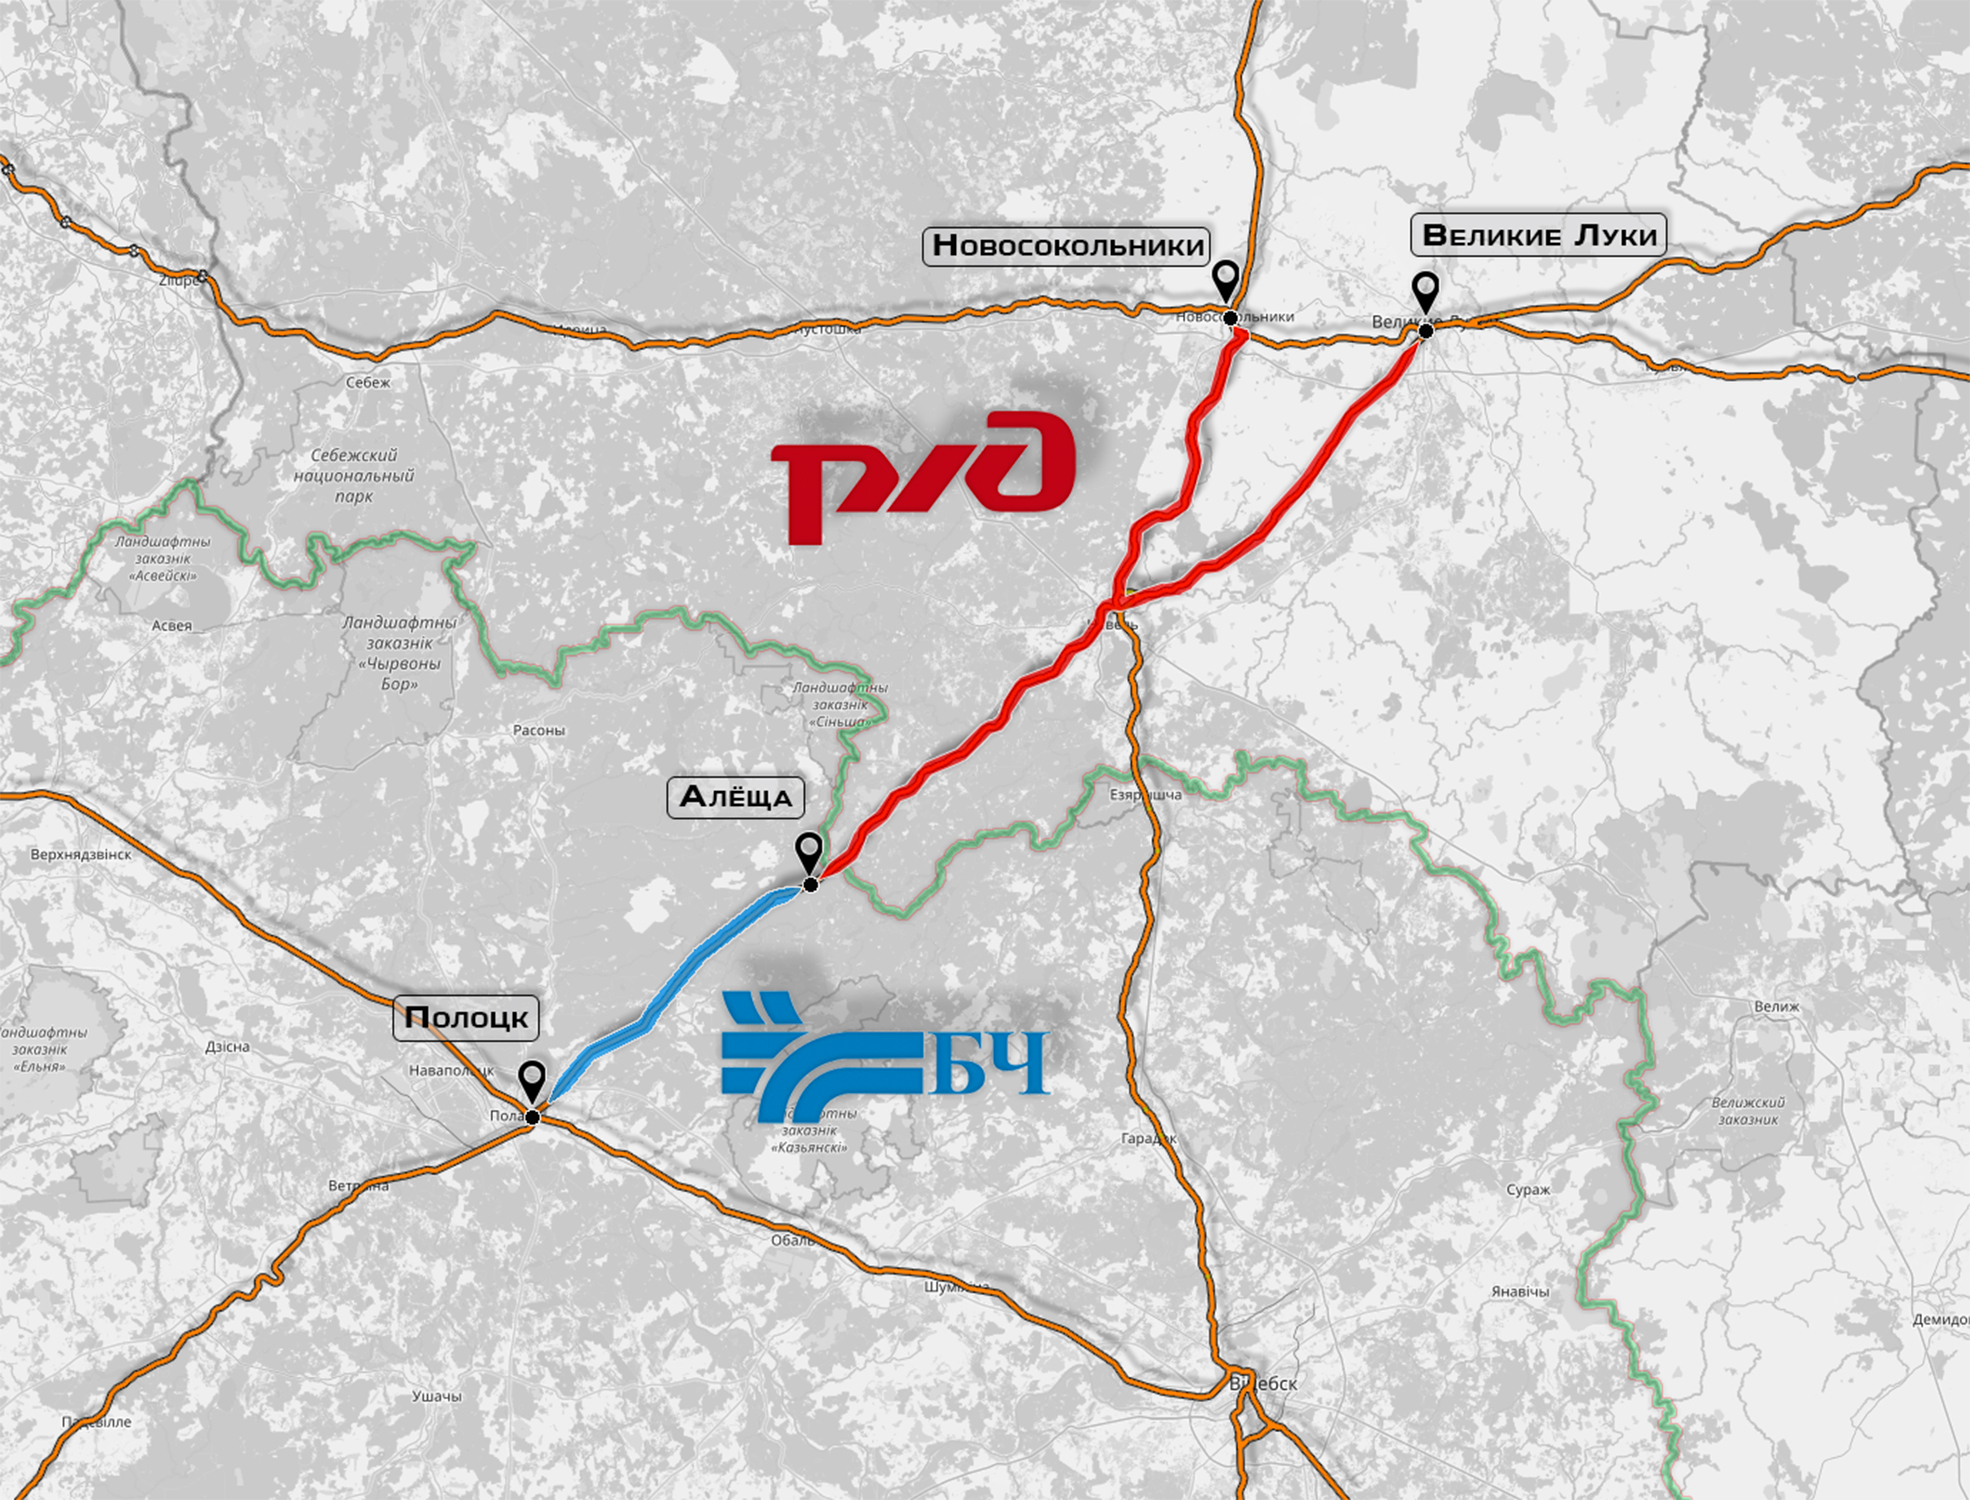 Карта маршрутов следования поездов Полоцк - Алёща - Новосокольники/Великие Луки